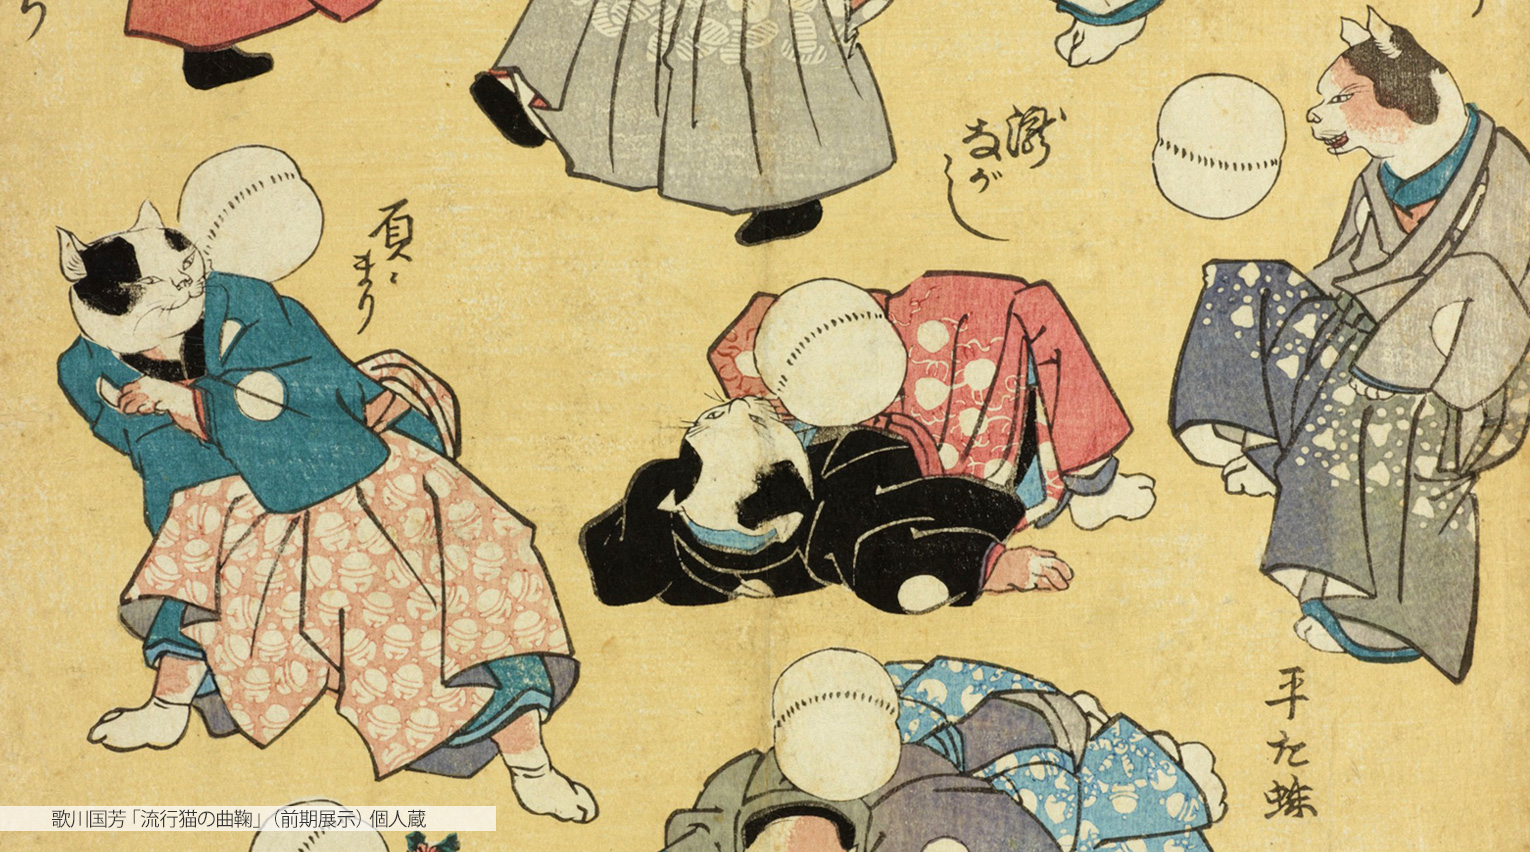 国芳の猫愛を深く堪能する、太田記念美術館 「江戸にゃんこ」展レポート